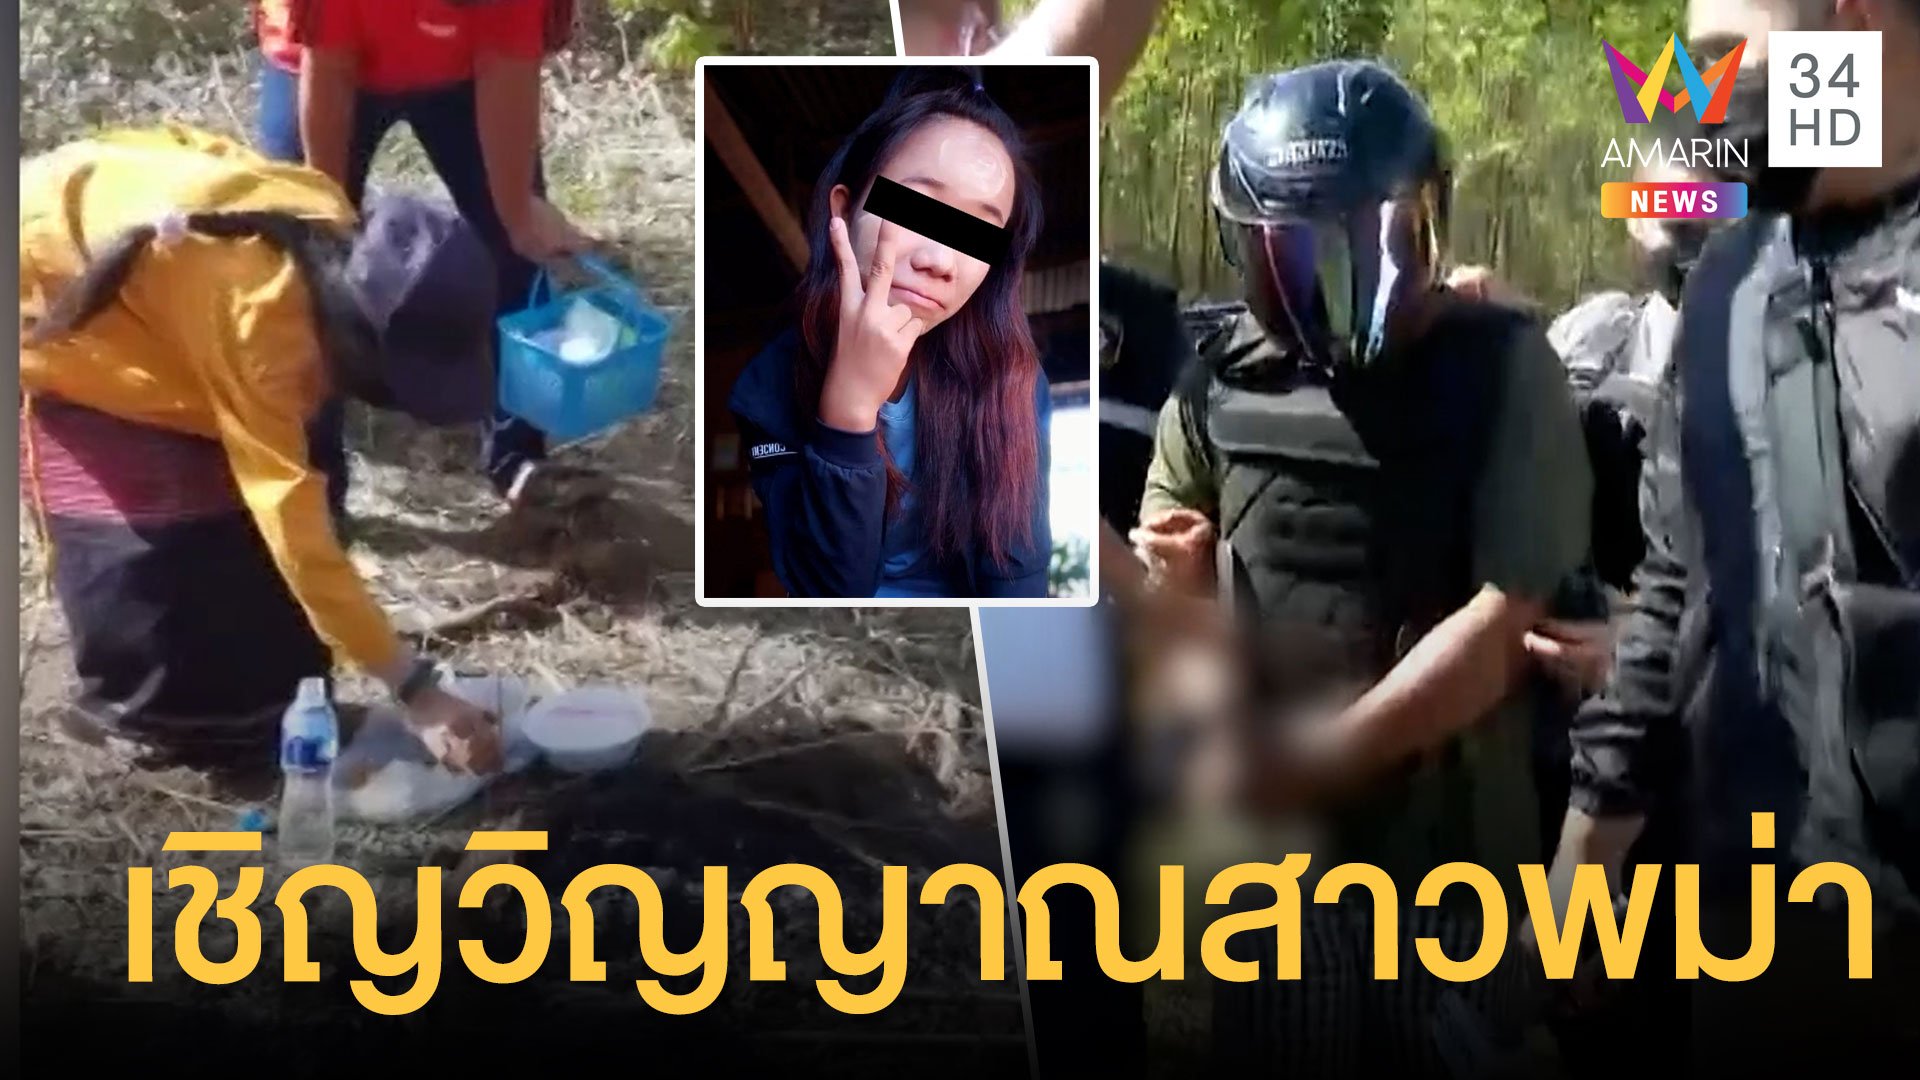 ญาติสาวพม่าเหยื่อข่มขืนเผานั่งยาง เชิญดวงวิญญาณกลับบ้าน | ข่าวเที่ยงอมรินทร์ | 20 พ.ย. 64 | AMARIN TVHD34